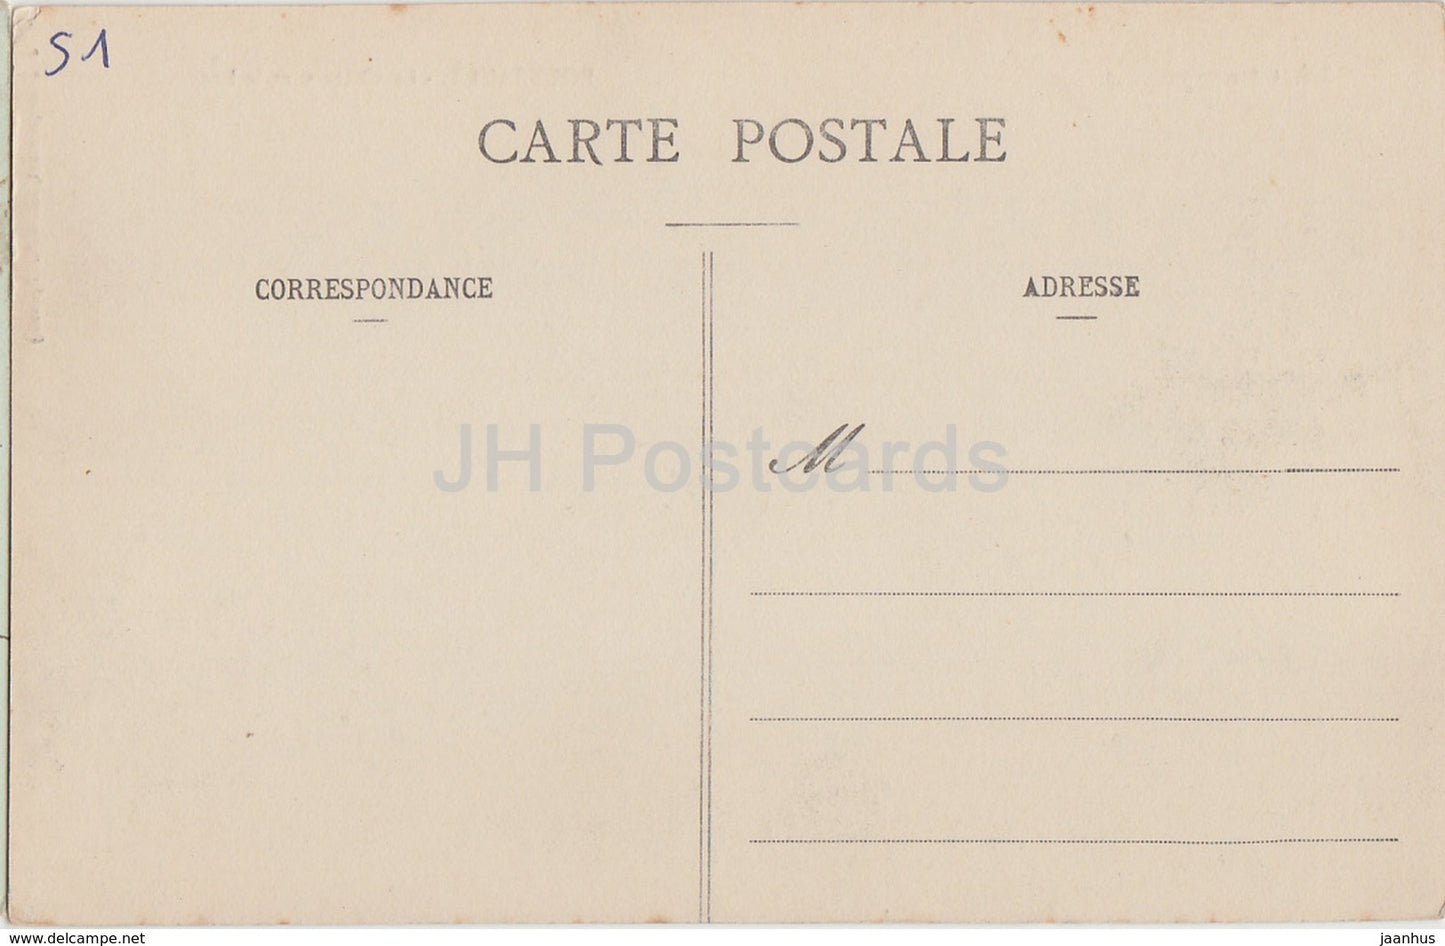 La Champagne - Boursault - Le Chateau et le Lac - castle - old postcard - France - unused